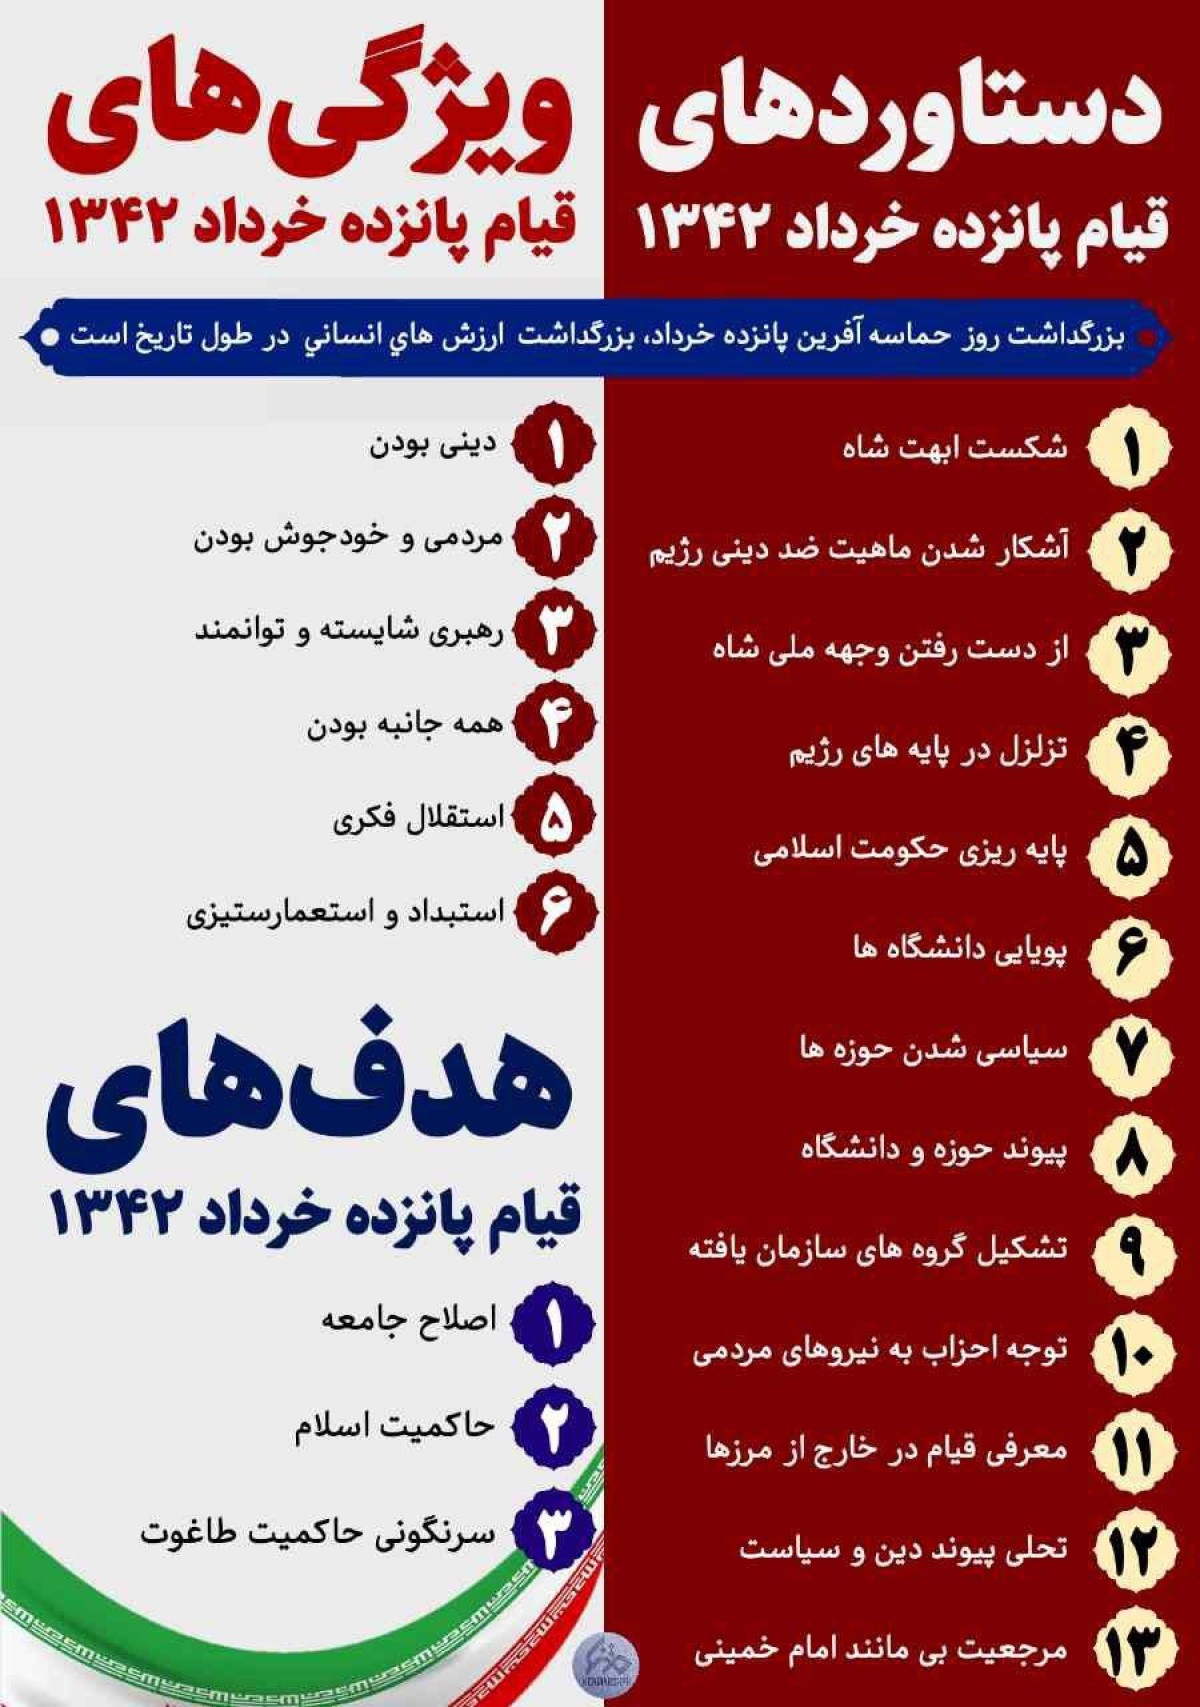 ویژگی‌ها، اهداف و دستاوردهای قیام 15 خرداد